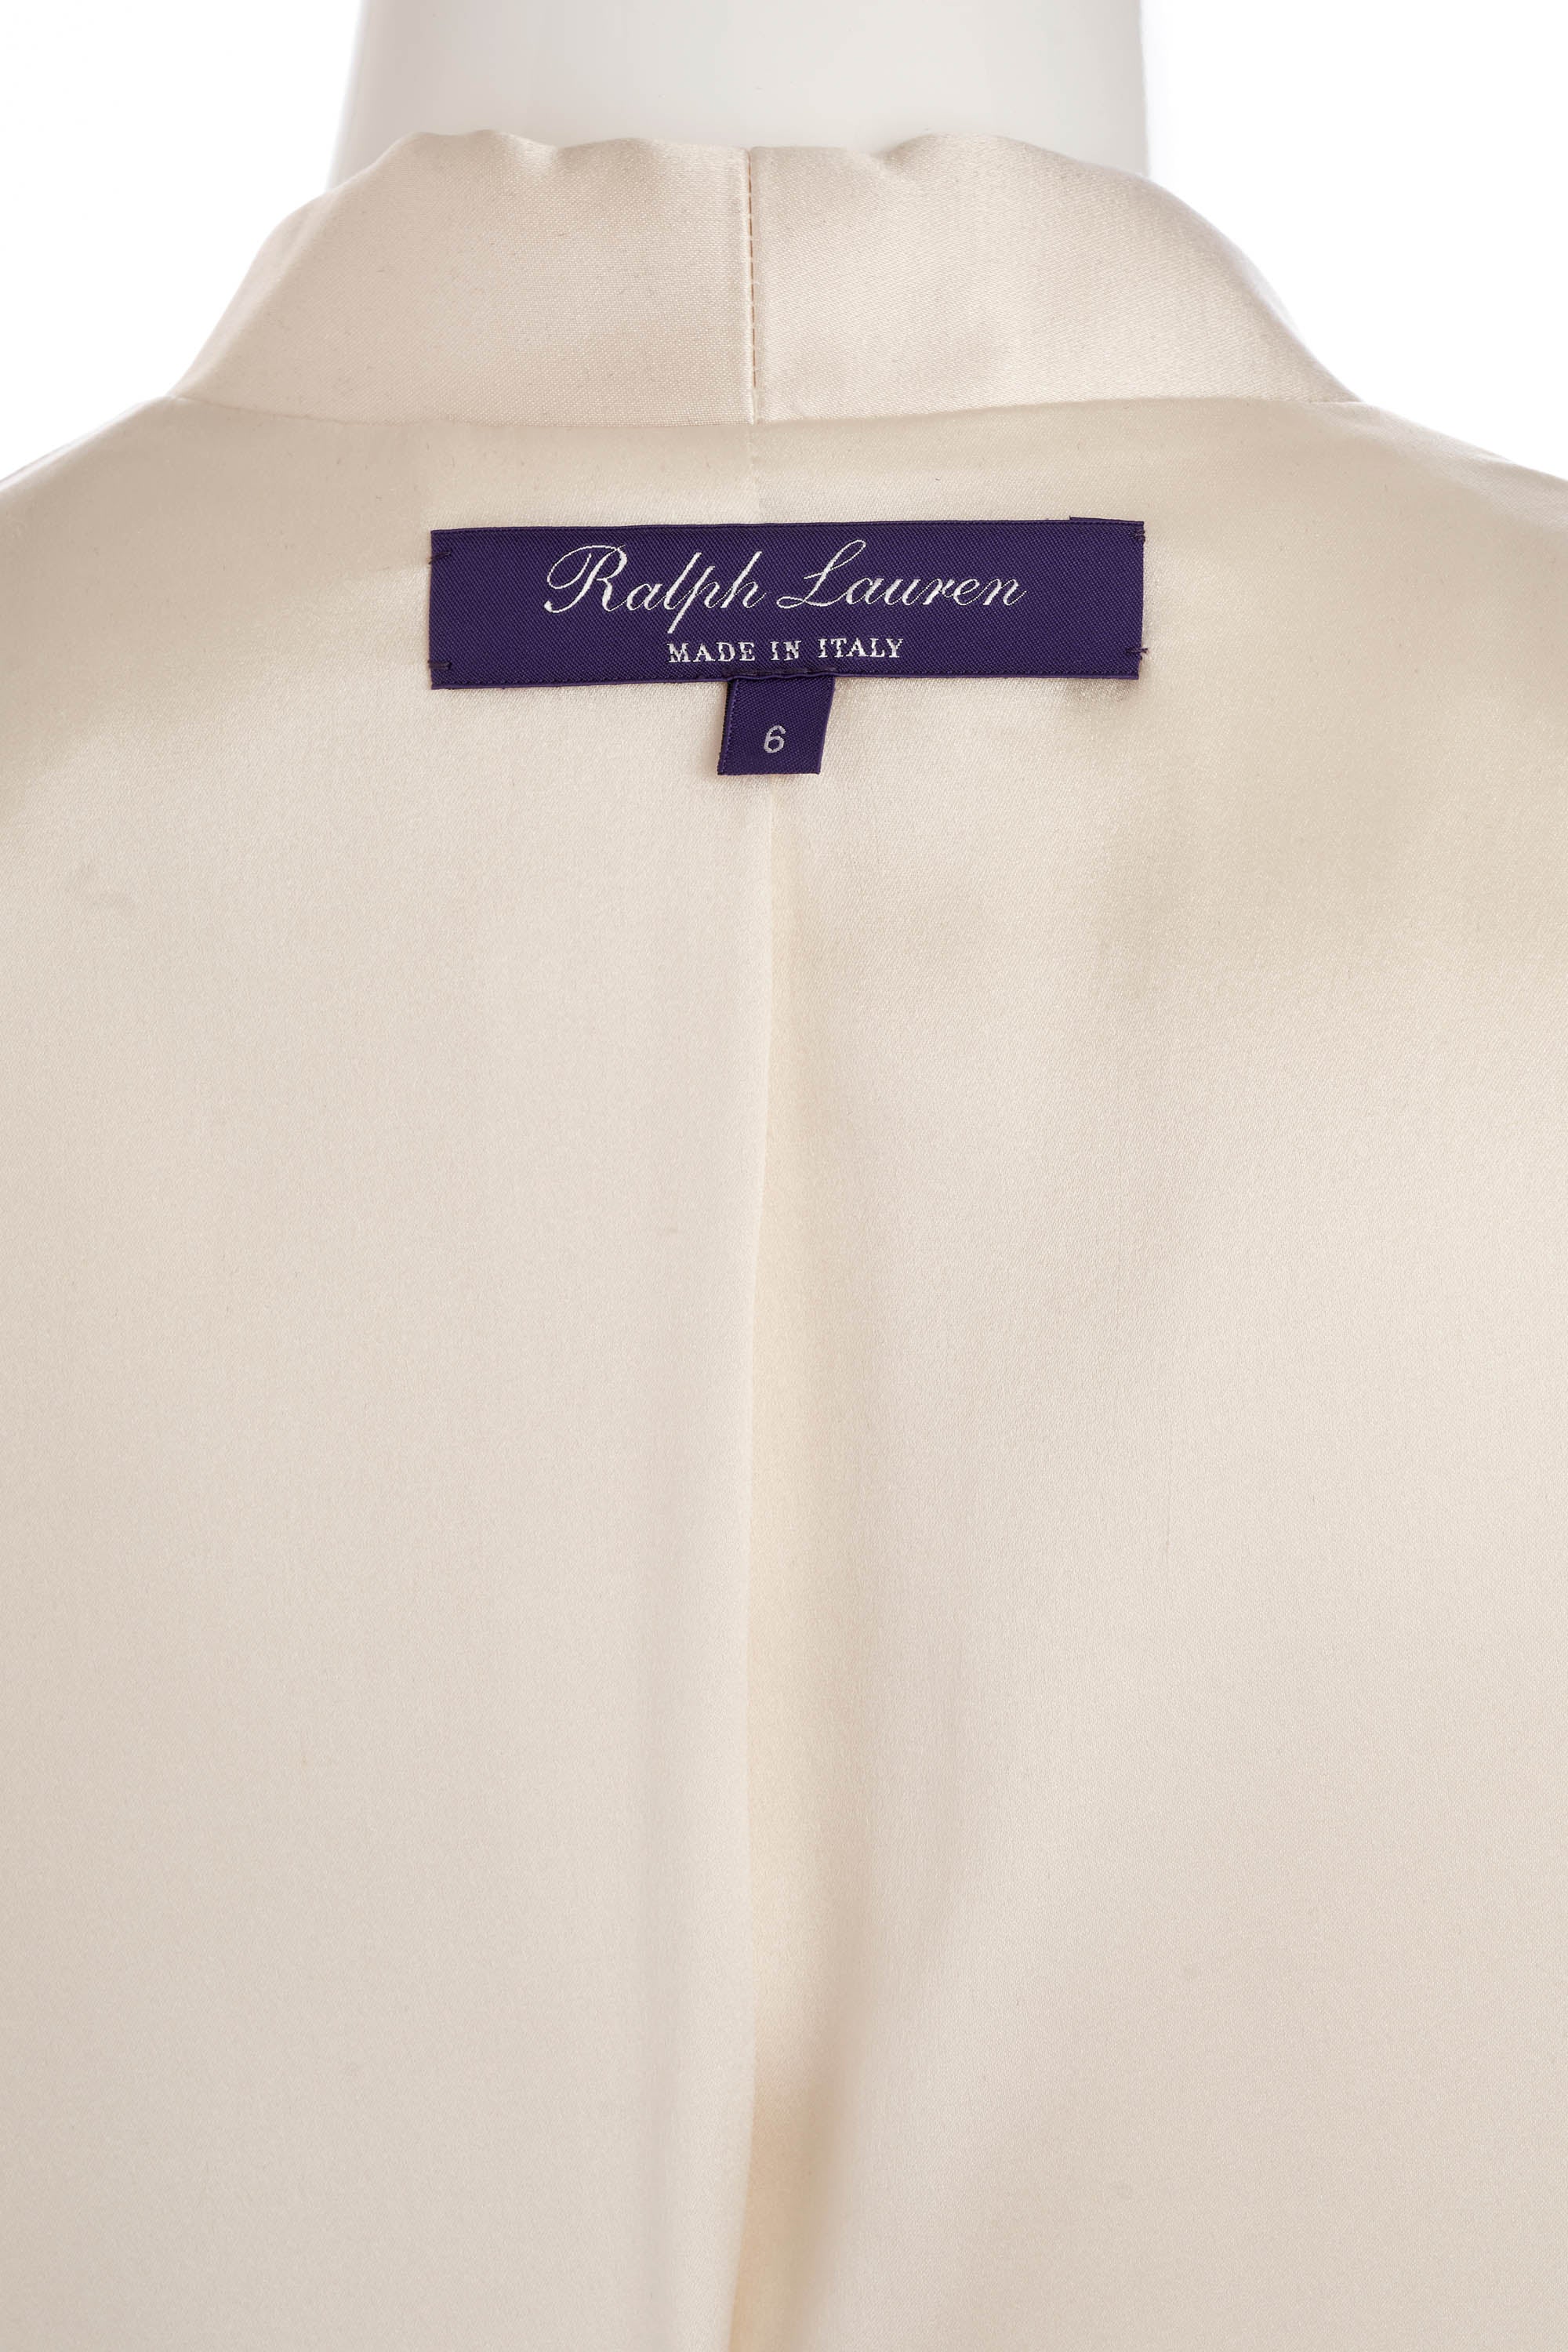 Ralph Lauren Purple Label Tuxedo and Pants